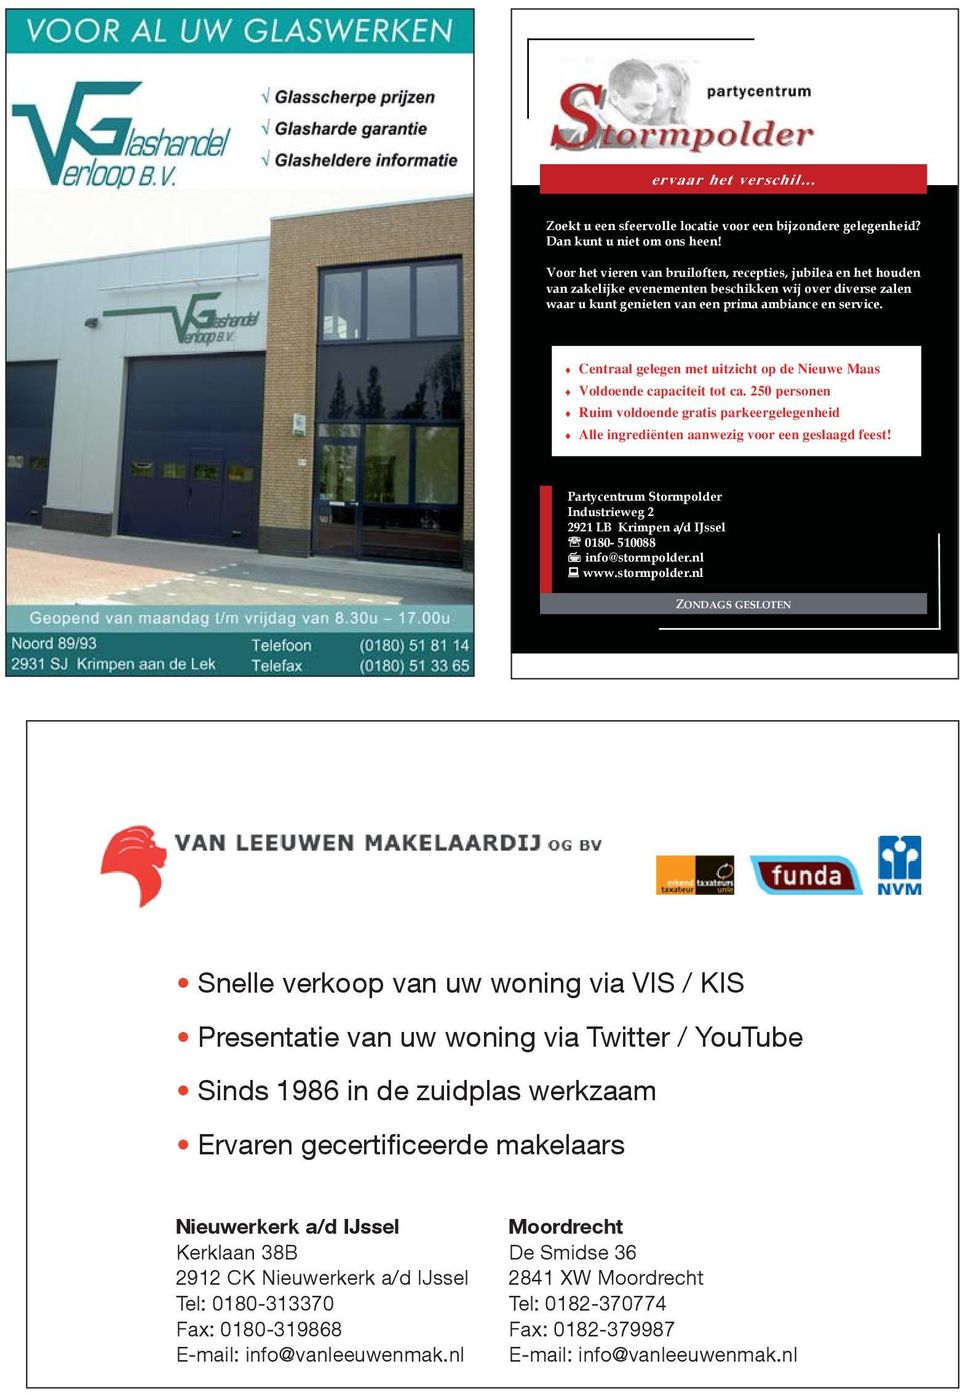 Partycentrum Stormpolder Industrieweg 2 2921 LB Krimpen a/d IJssel 0180-510088 info@stormpolder.